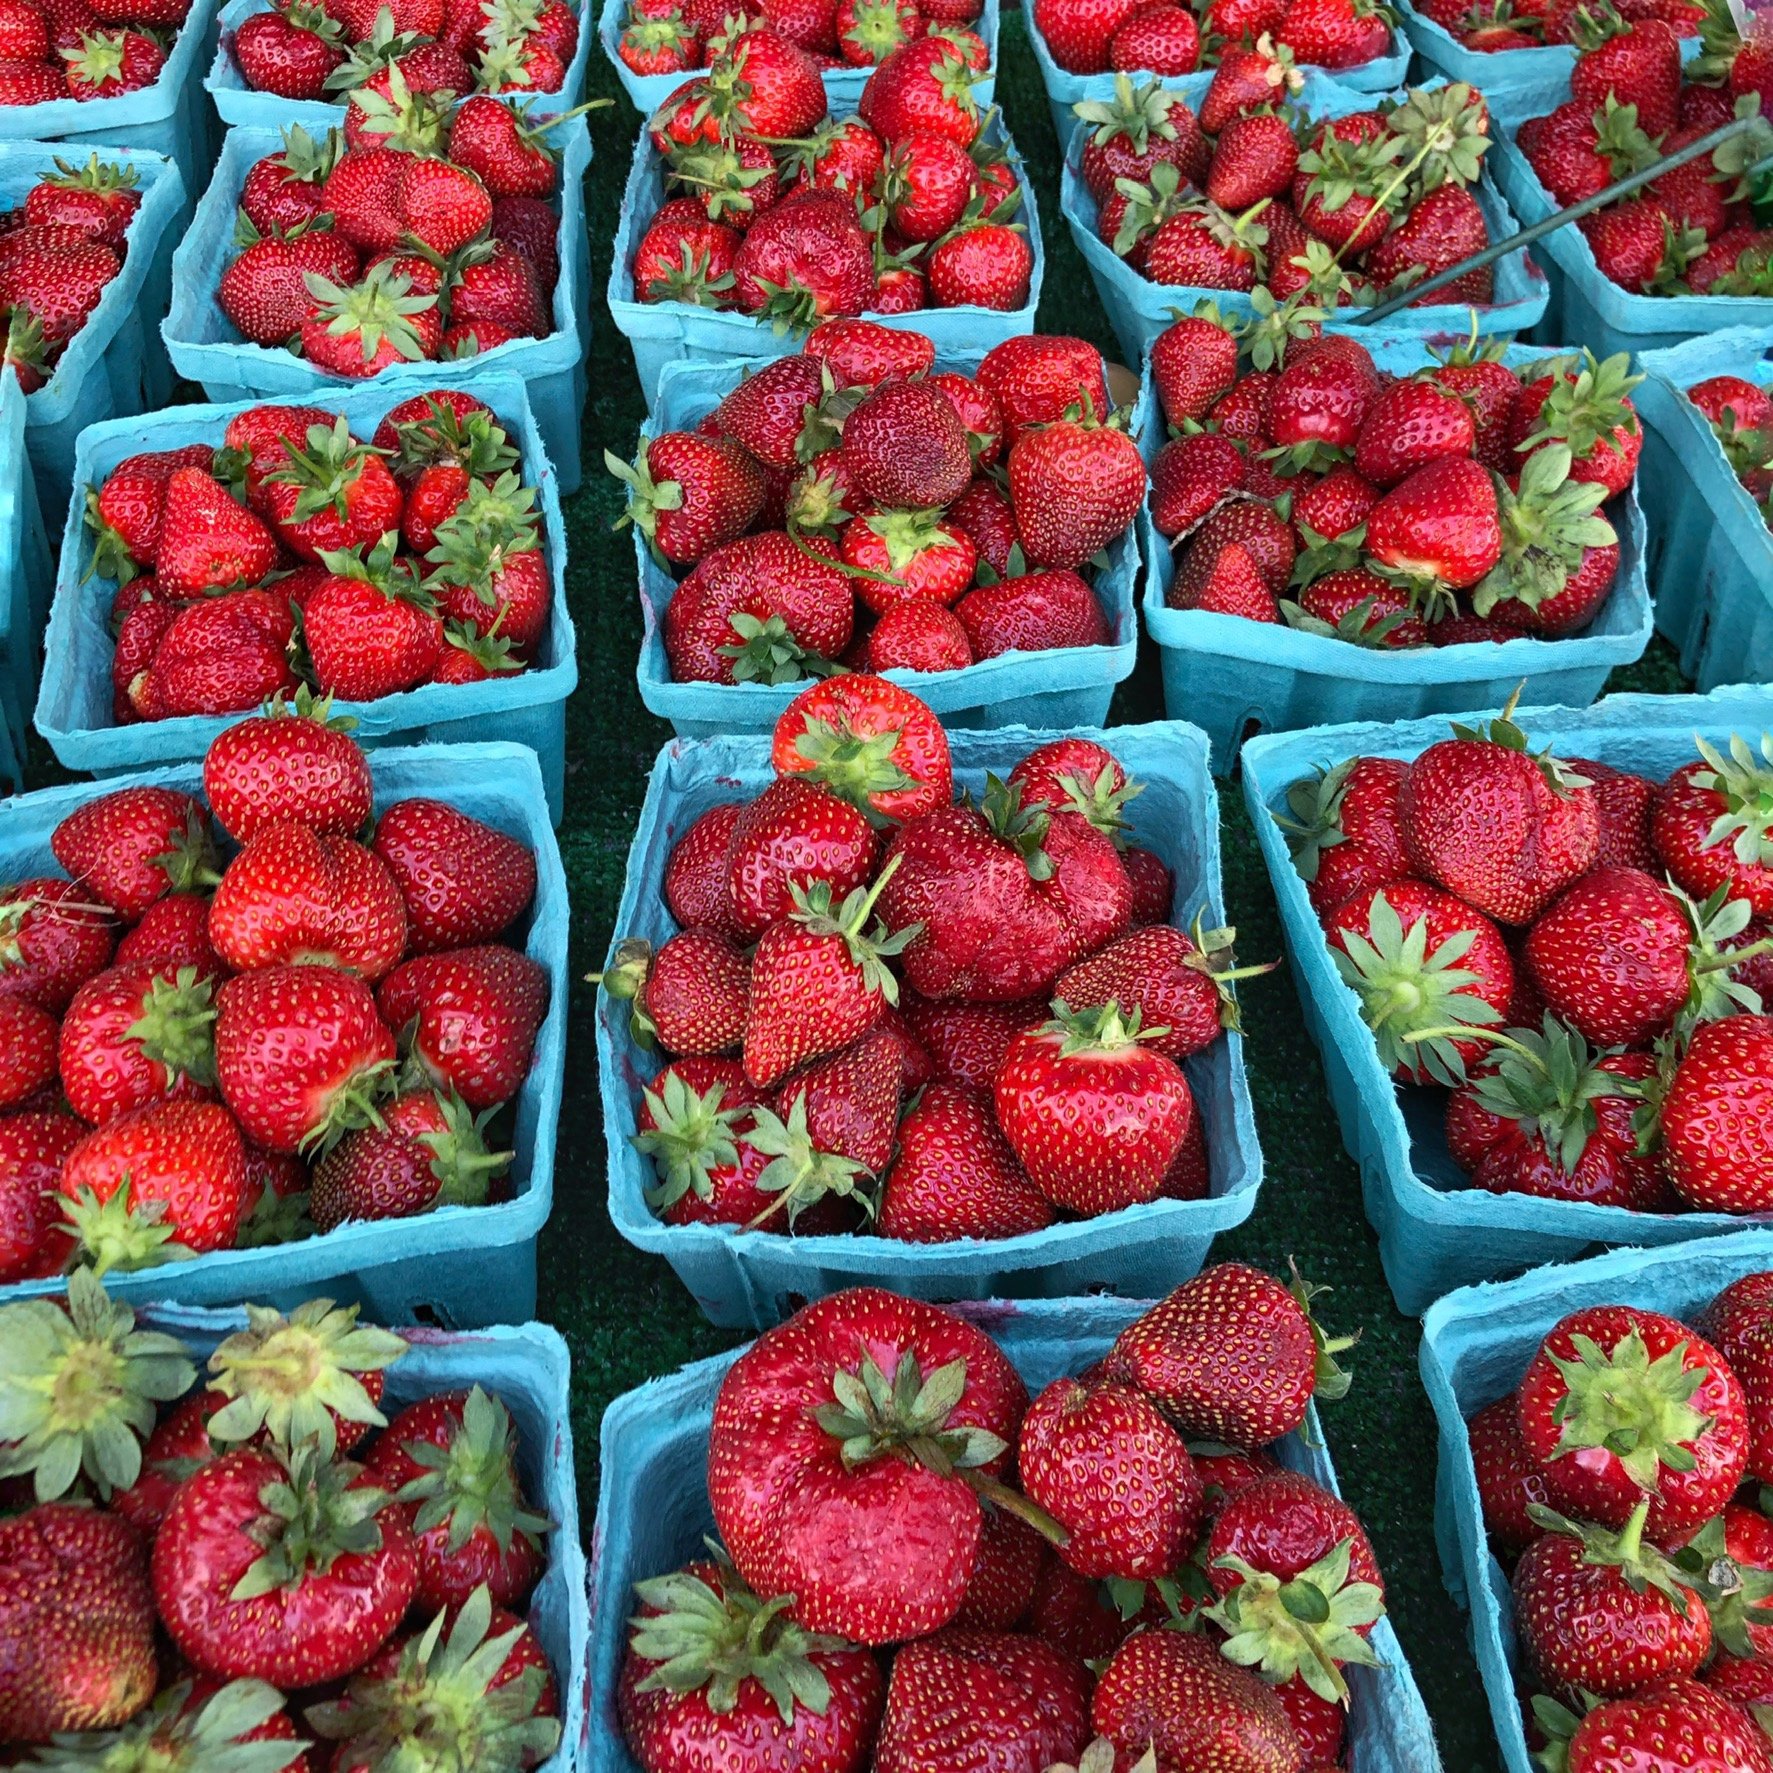 strawberries at farmers market.jpeg